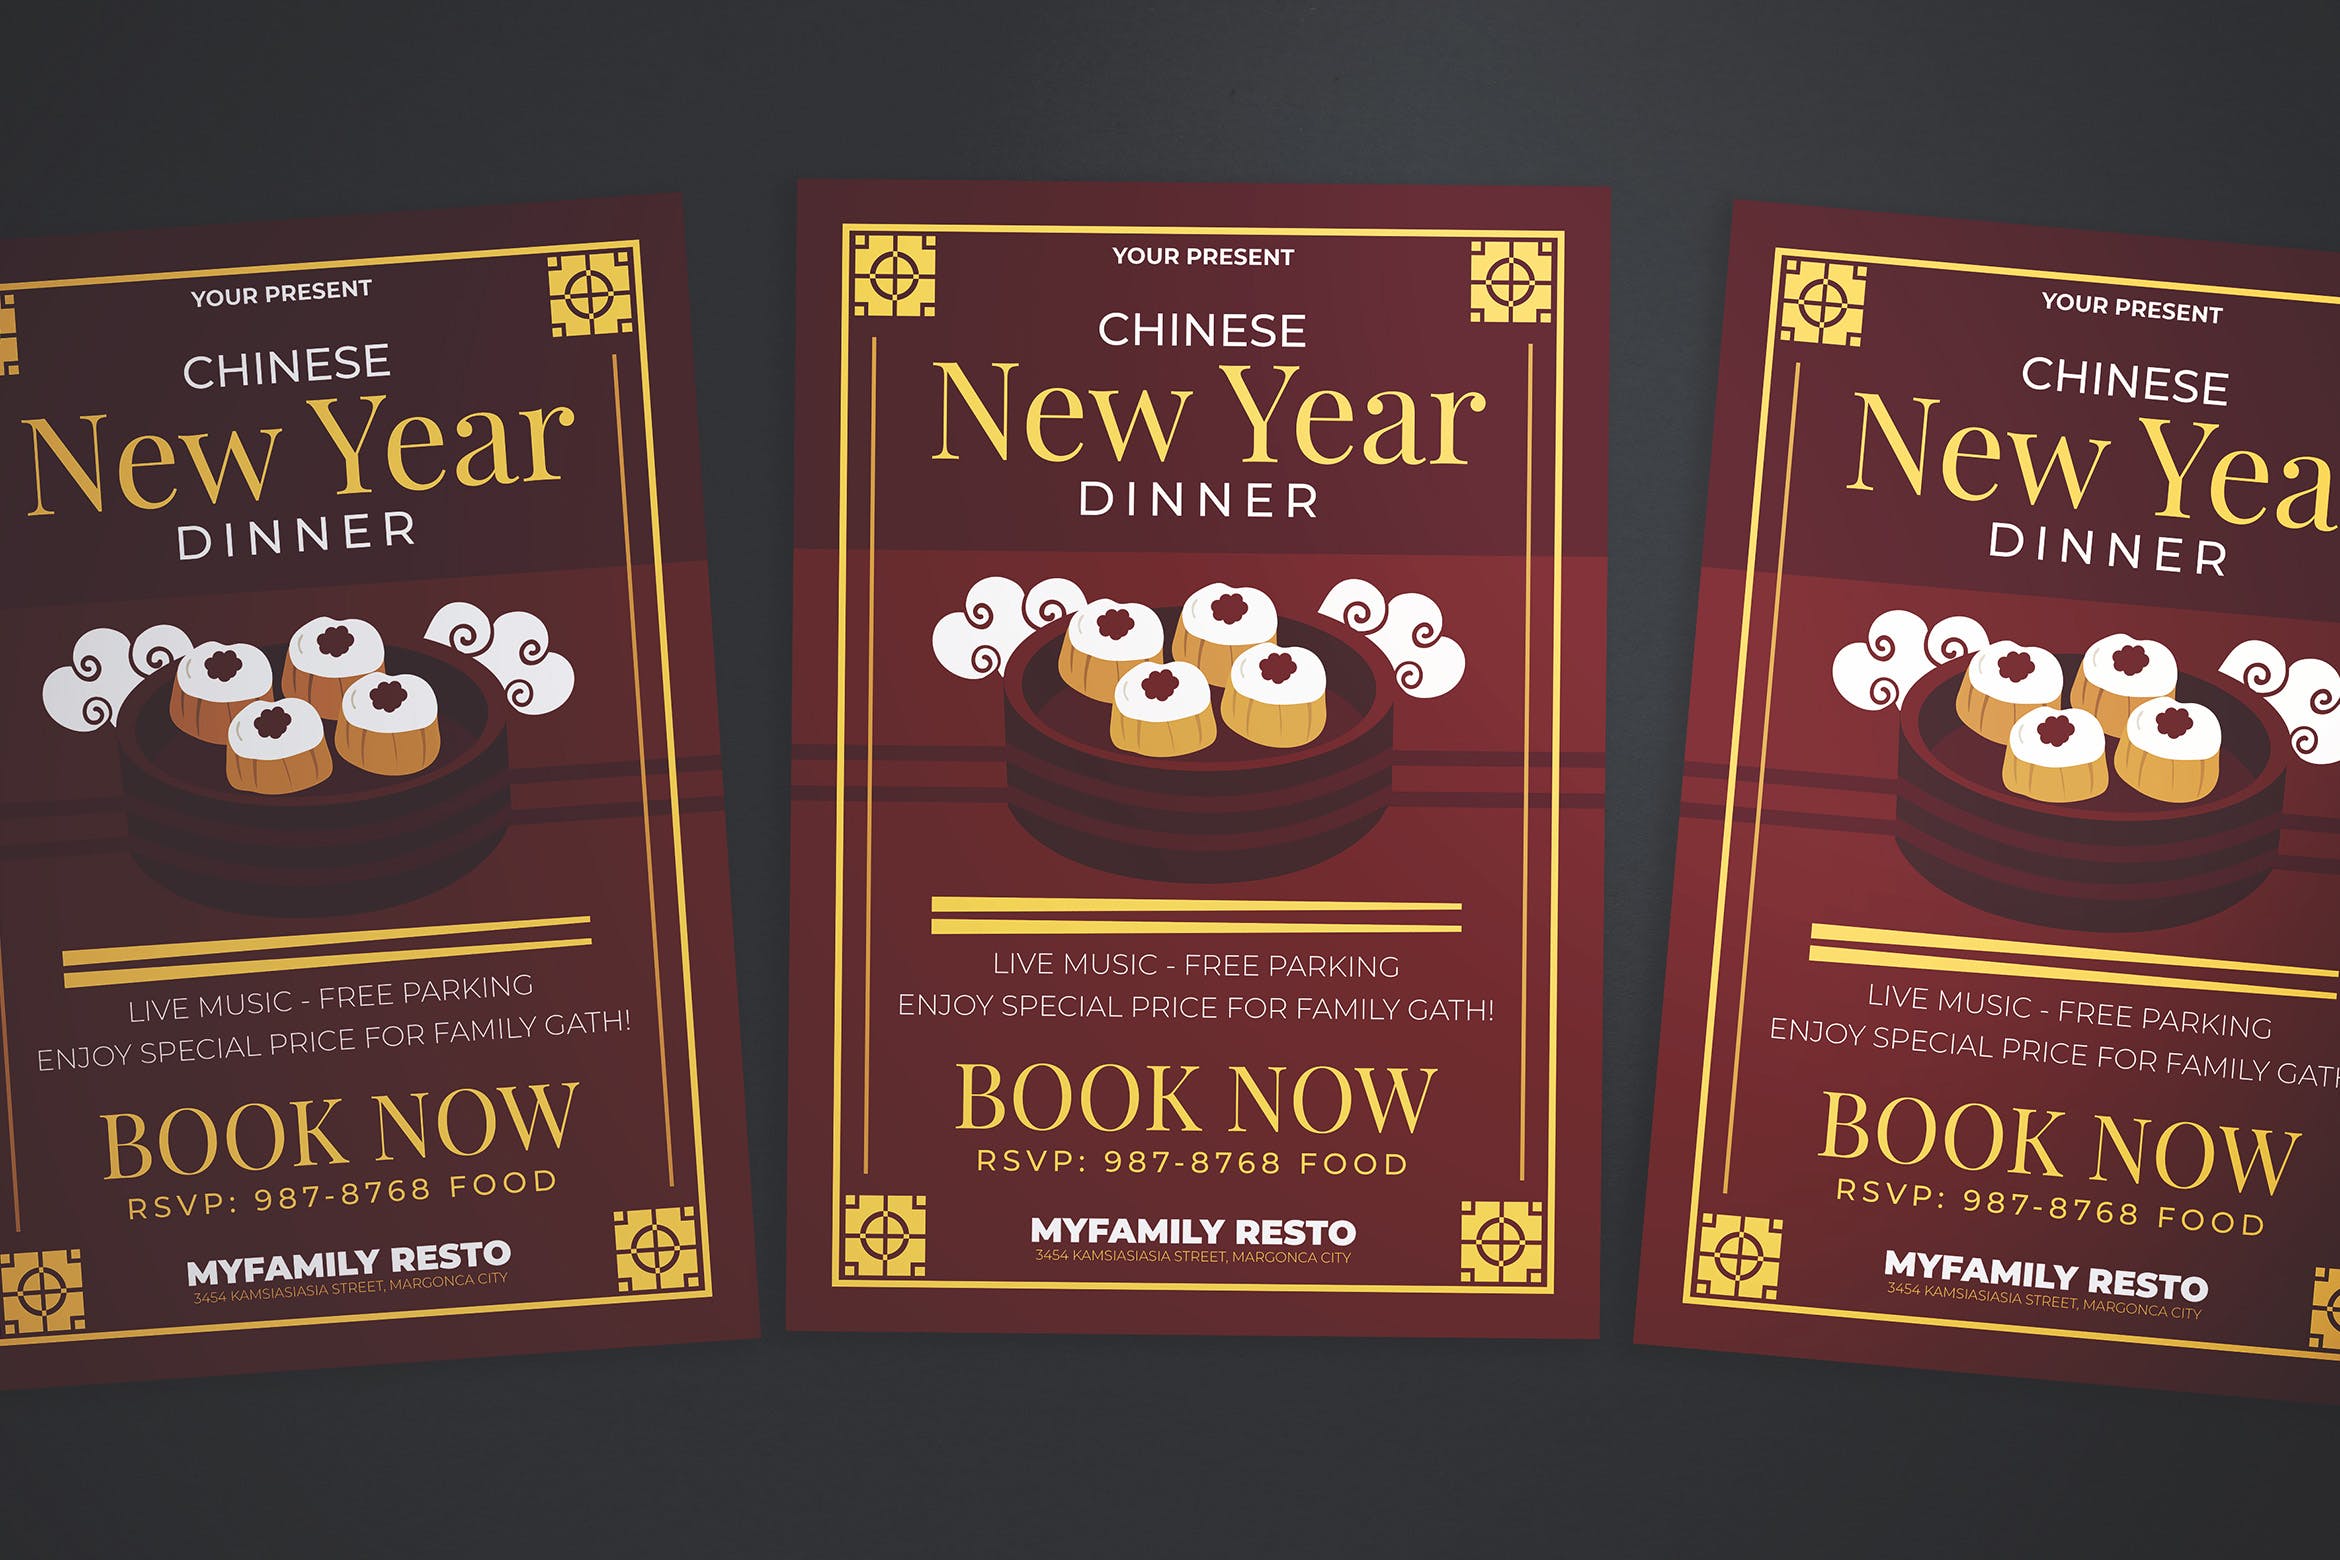 中式餐厅新年晚宴预订海报传单第一素材精选PSD模板 Chinese New Year Dinner Flyer插图